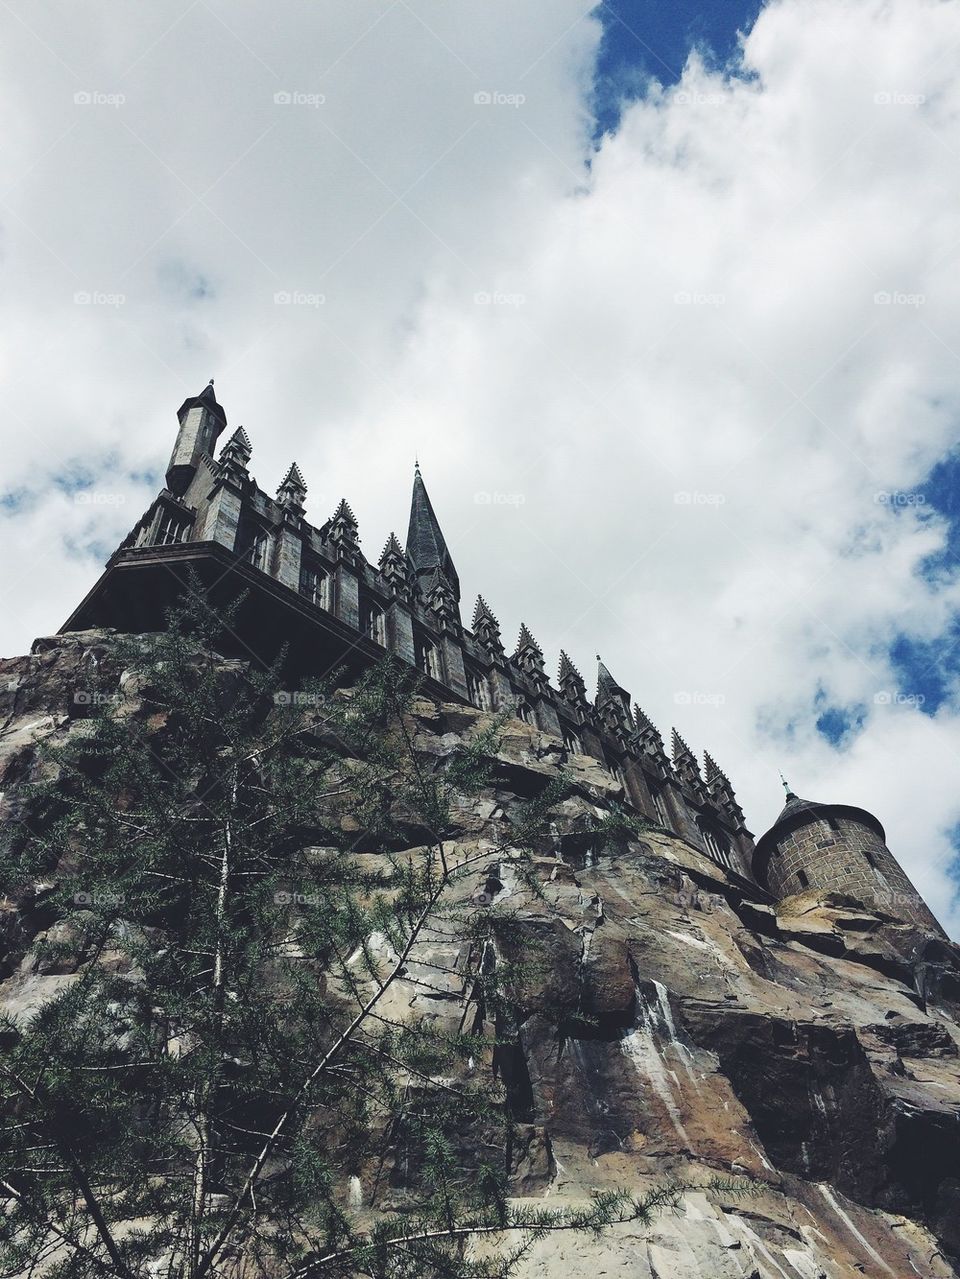 Harry Potter castle